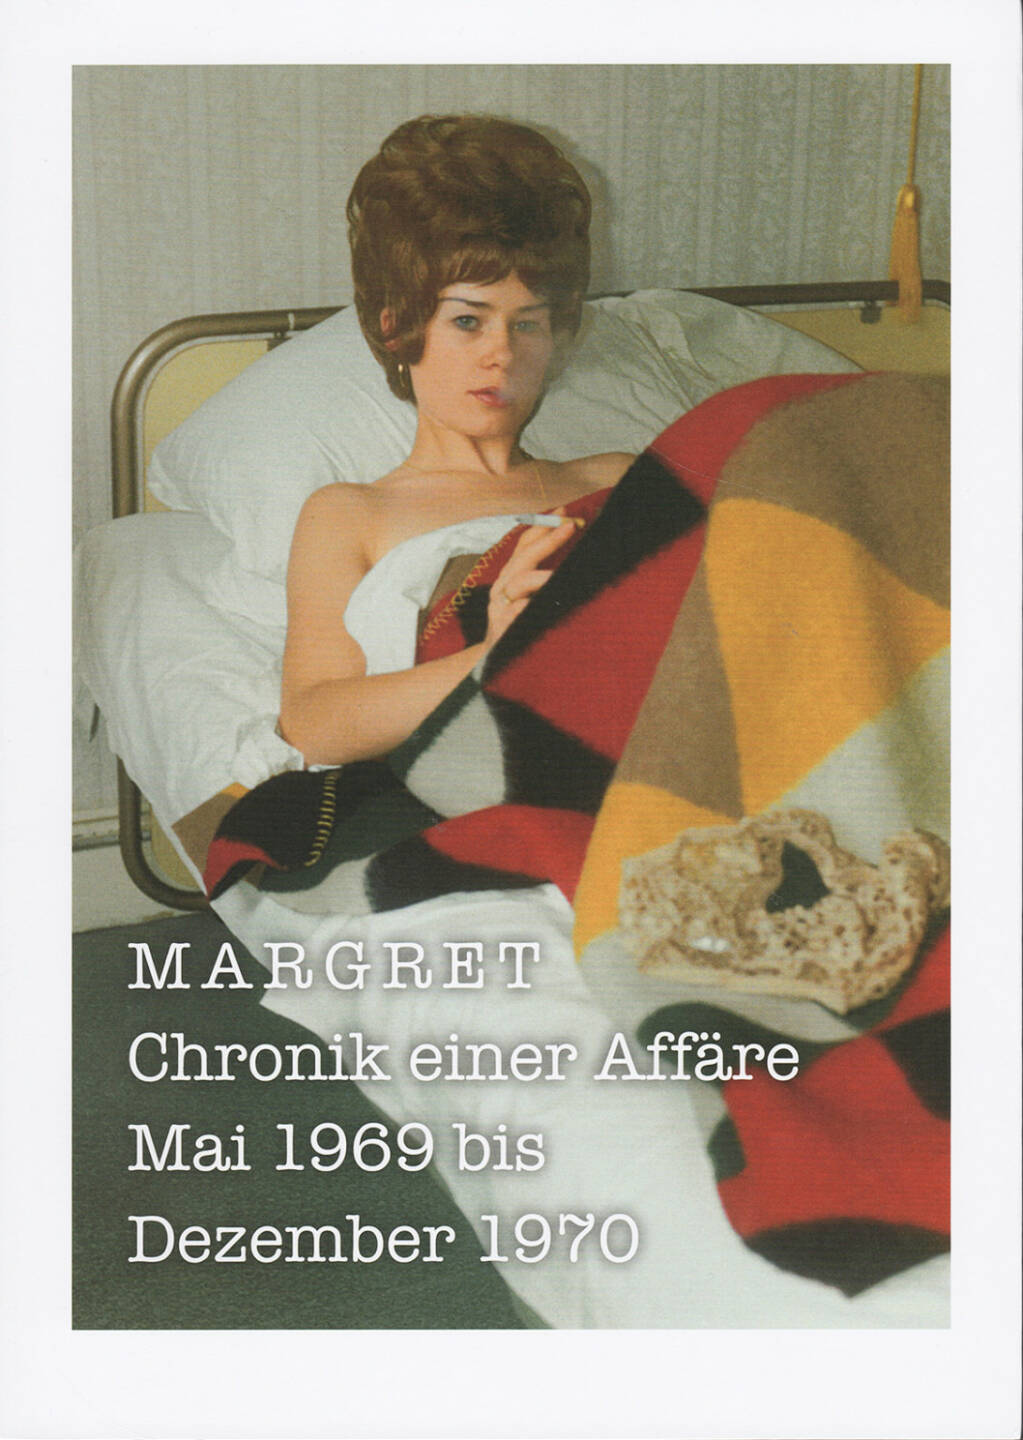 Nicole Delmes & Susanne Zander (Eds.) - Margret: Chronik einer Affäre (2012), 150-250 Euro - http://josefchladek.com/book/nicole_delmes_susanne_zander_eds_-_margret_chronik_einer_affare